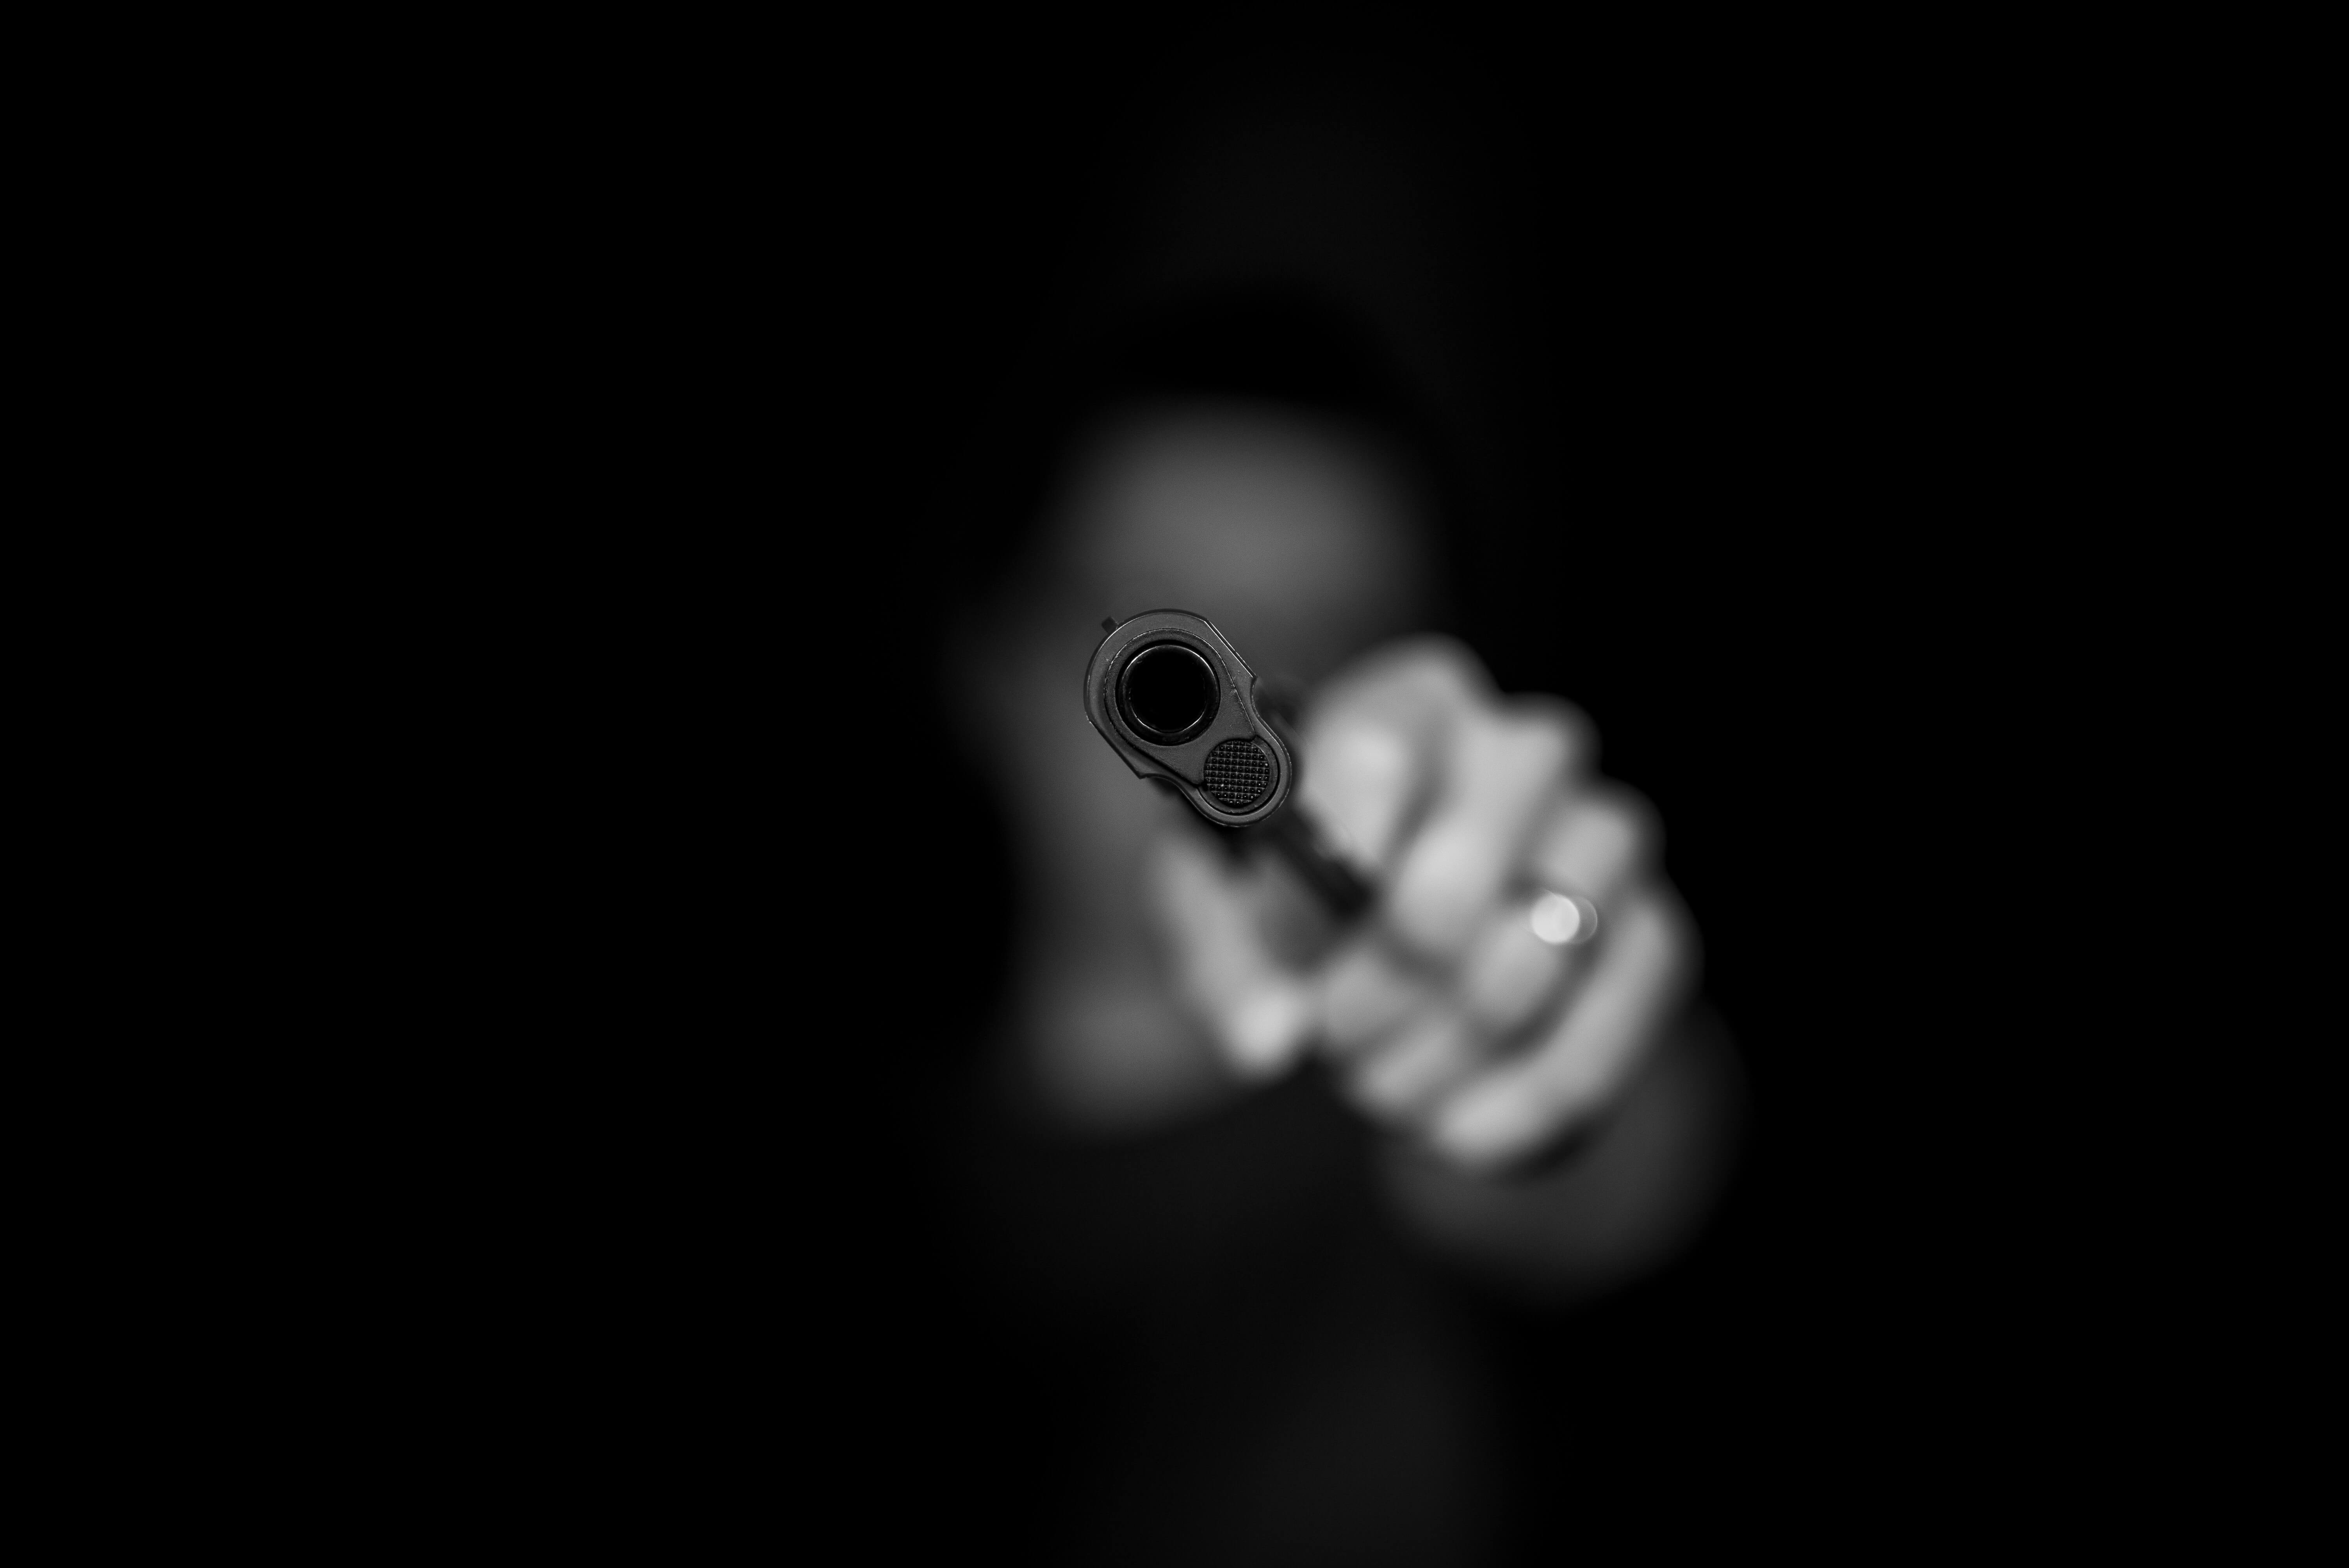 foto van een pistool die gericht wordt door een onherkenbaar persoon